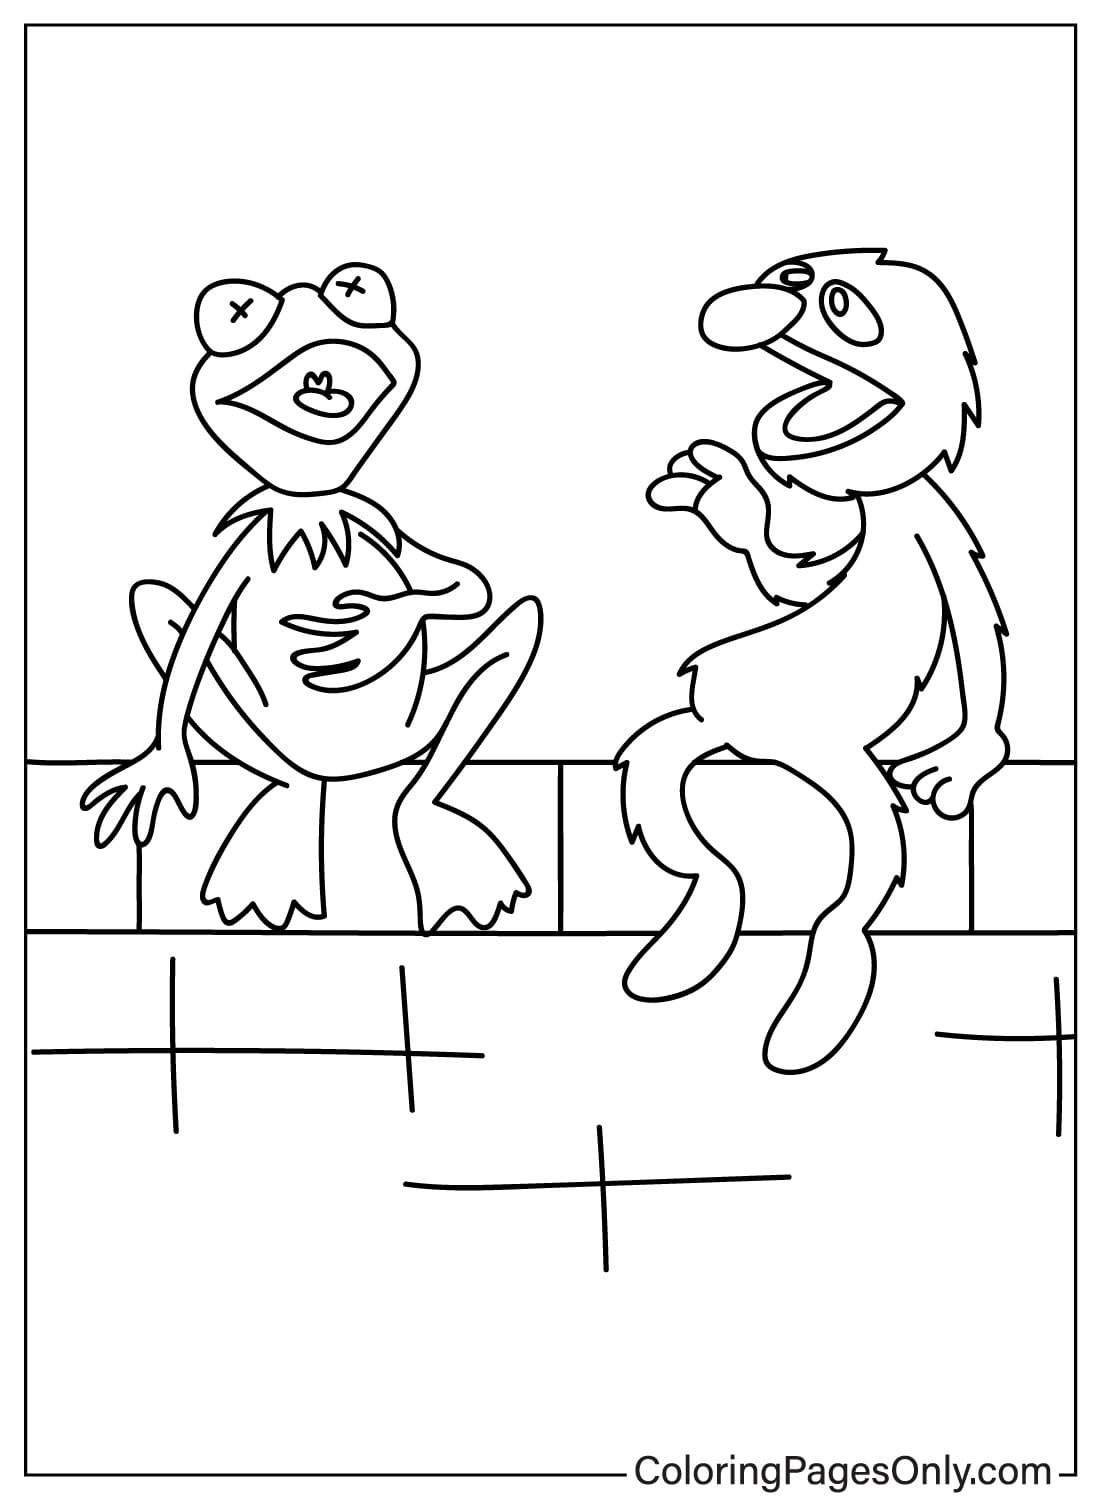 Página para colorear de Grover y Kermit de Grover